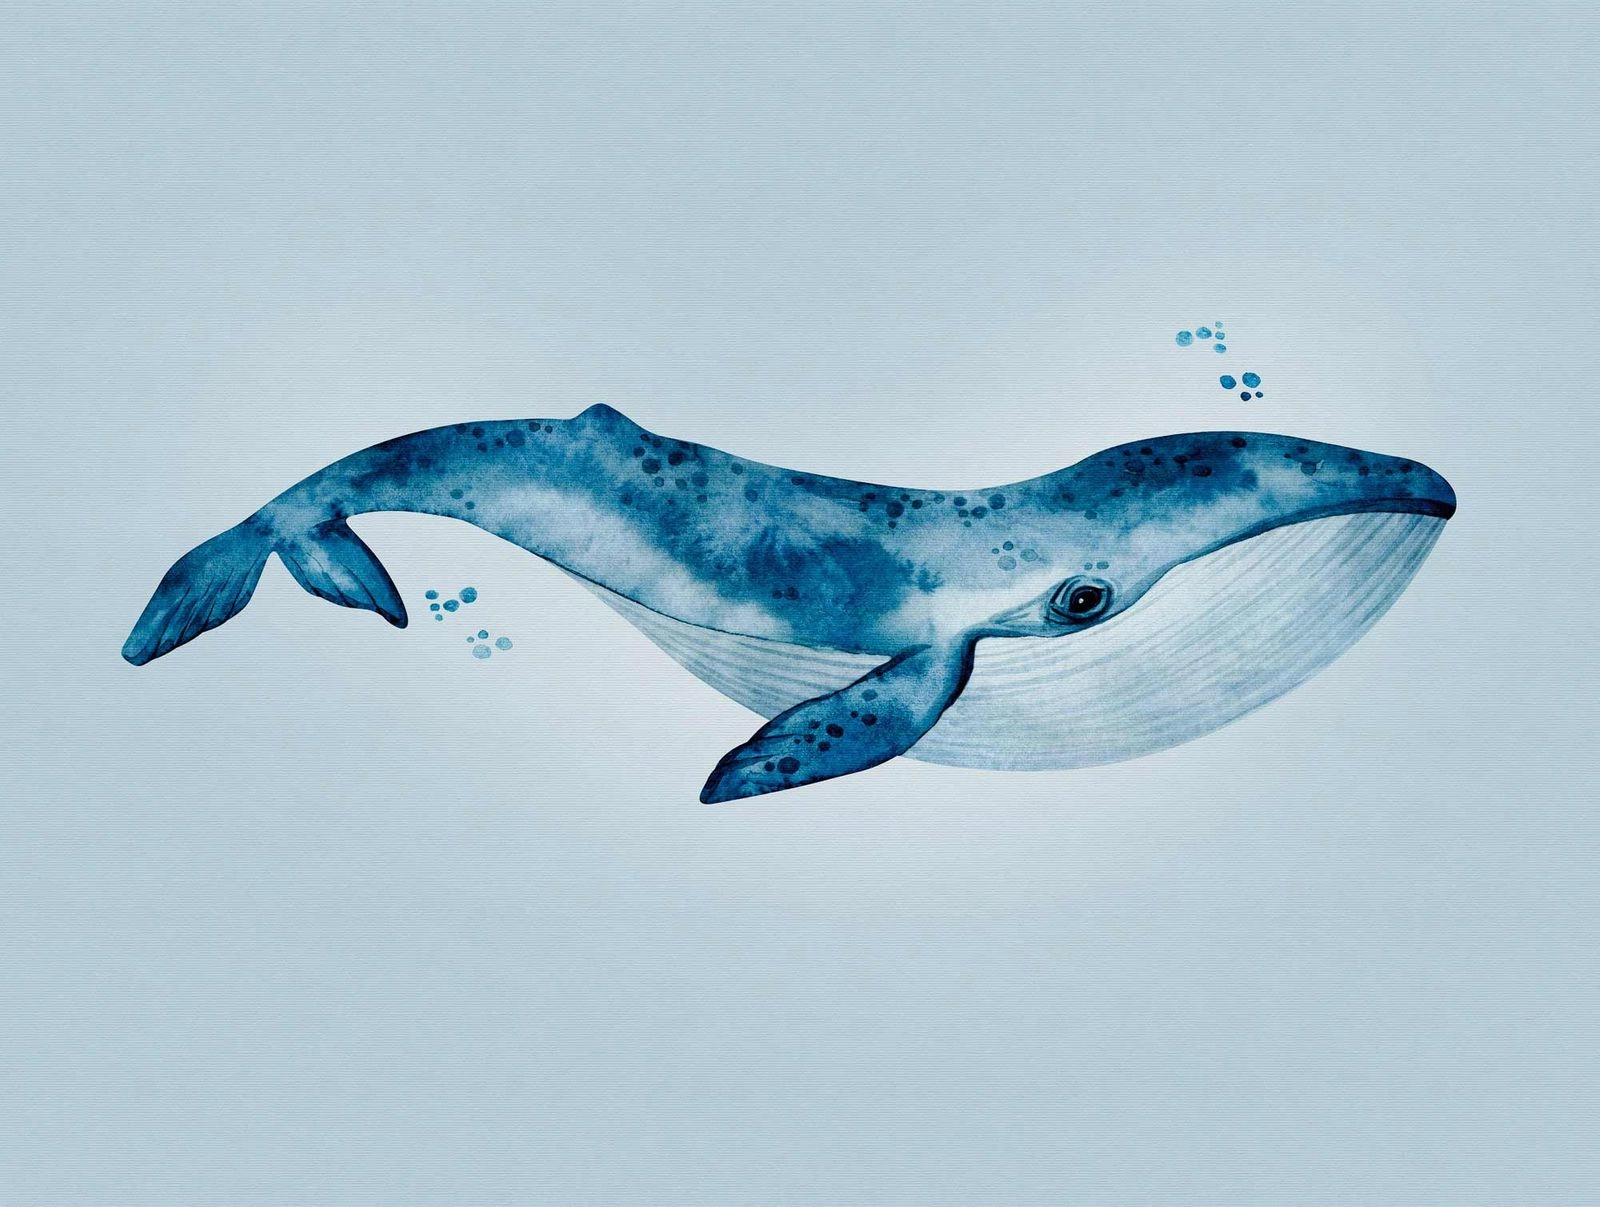 Óriás kék bálna mintás gyerekszobai poszter tapéta